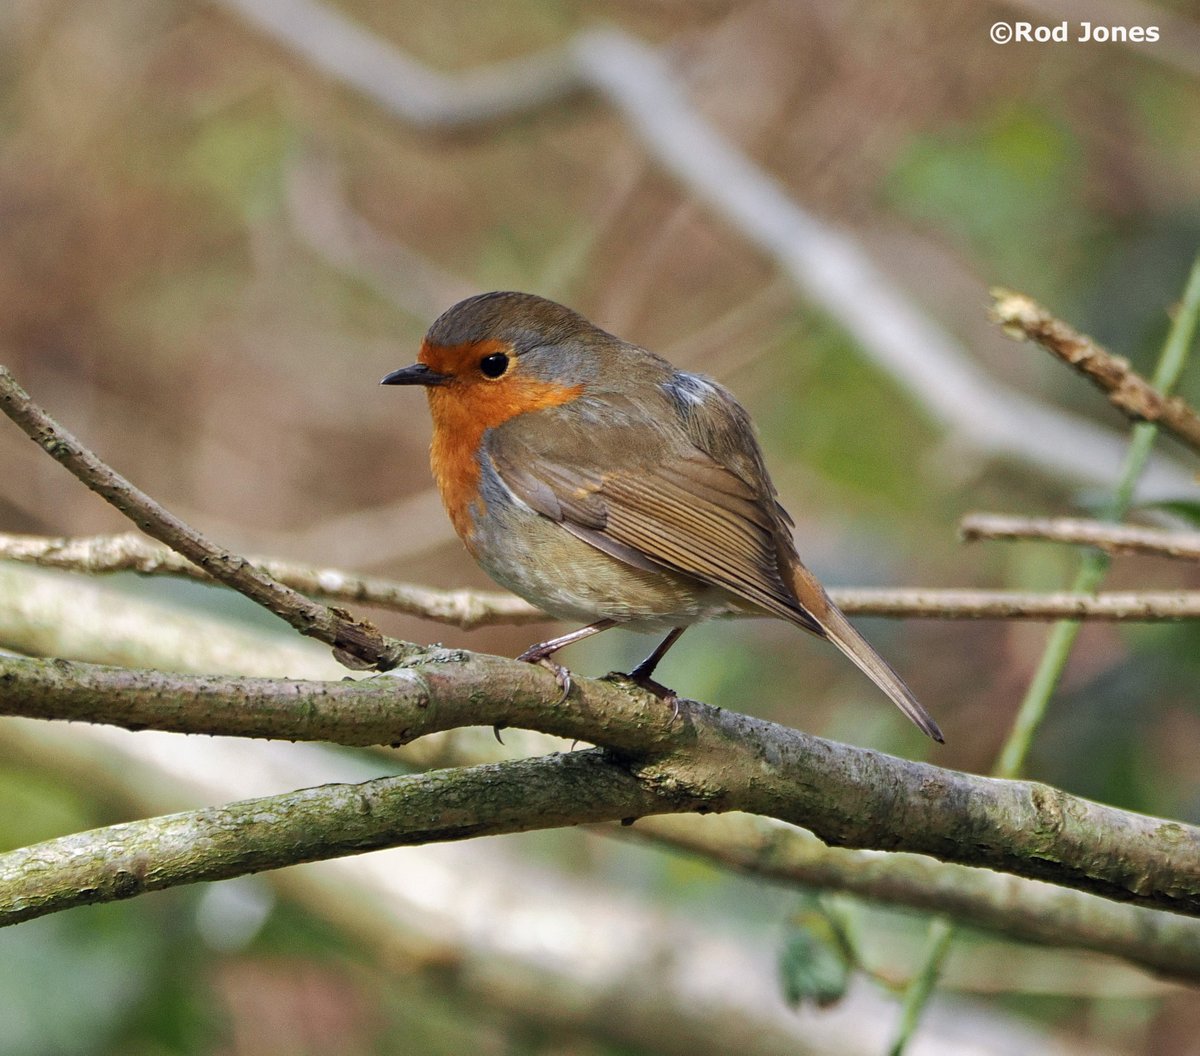 Robin at Cromwell Bottom. #ThePhotoHour #TwitterNatureCommunity #wildlife #nature #birds